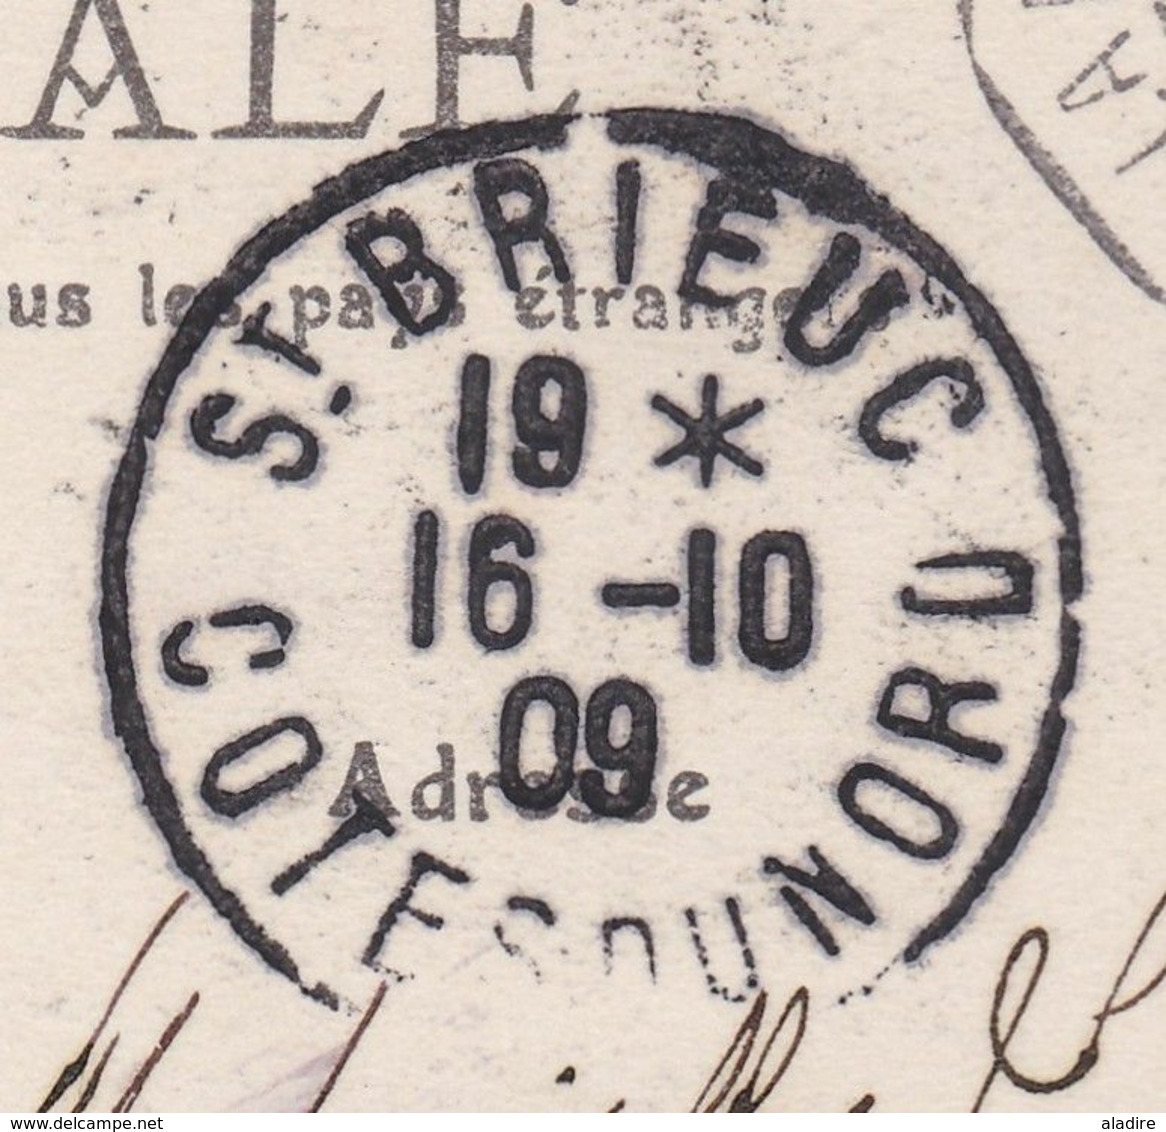 1909 - CP de Amparihy vers Saint Brieuc - ligne Réunion Marseille L.V N°2 - 5 c  groupe - cachet à date d'arrivée